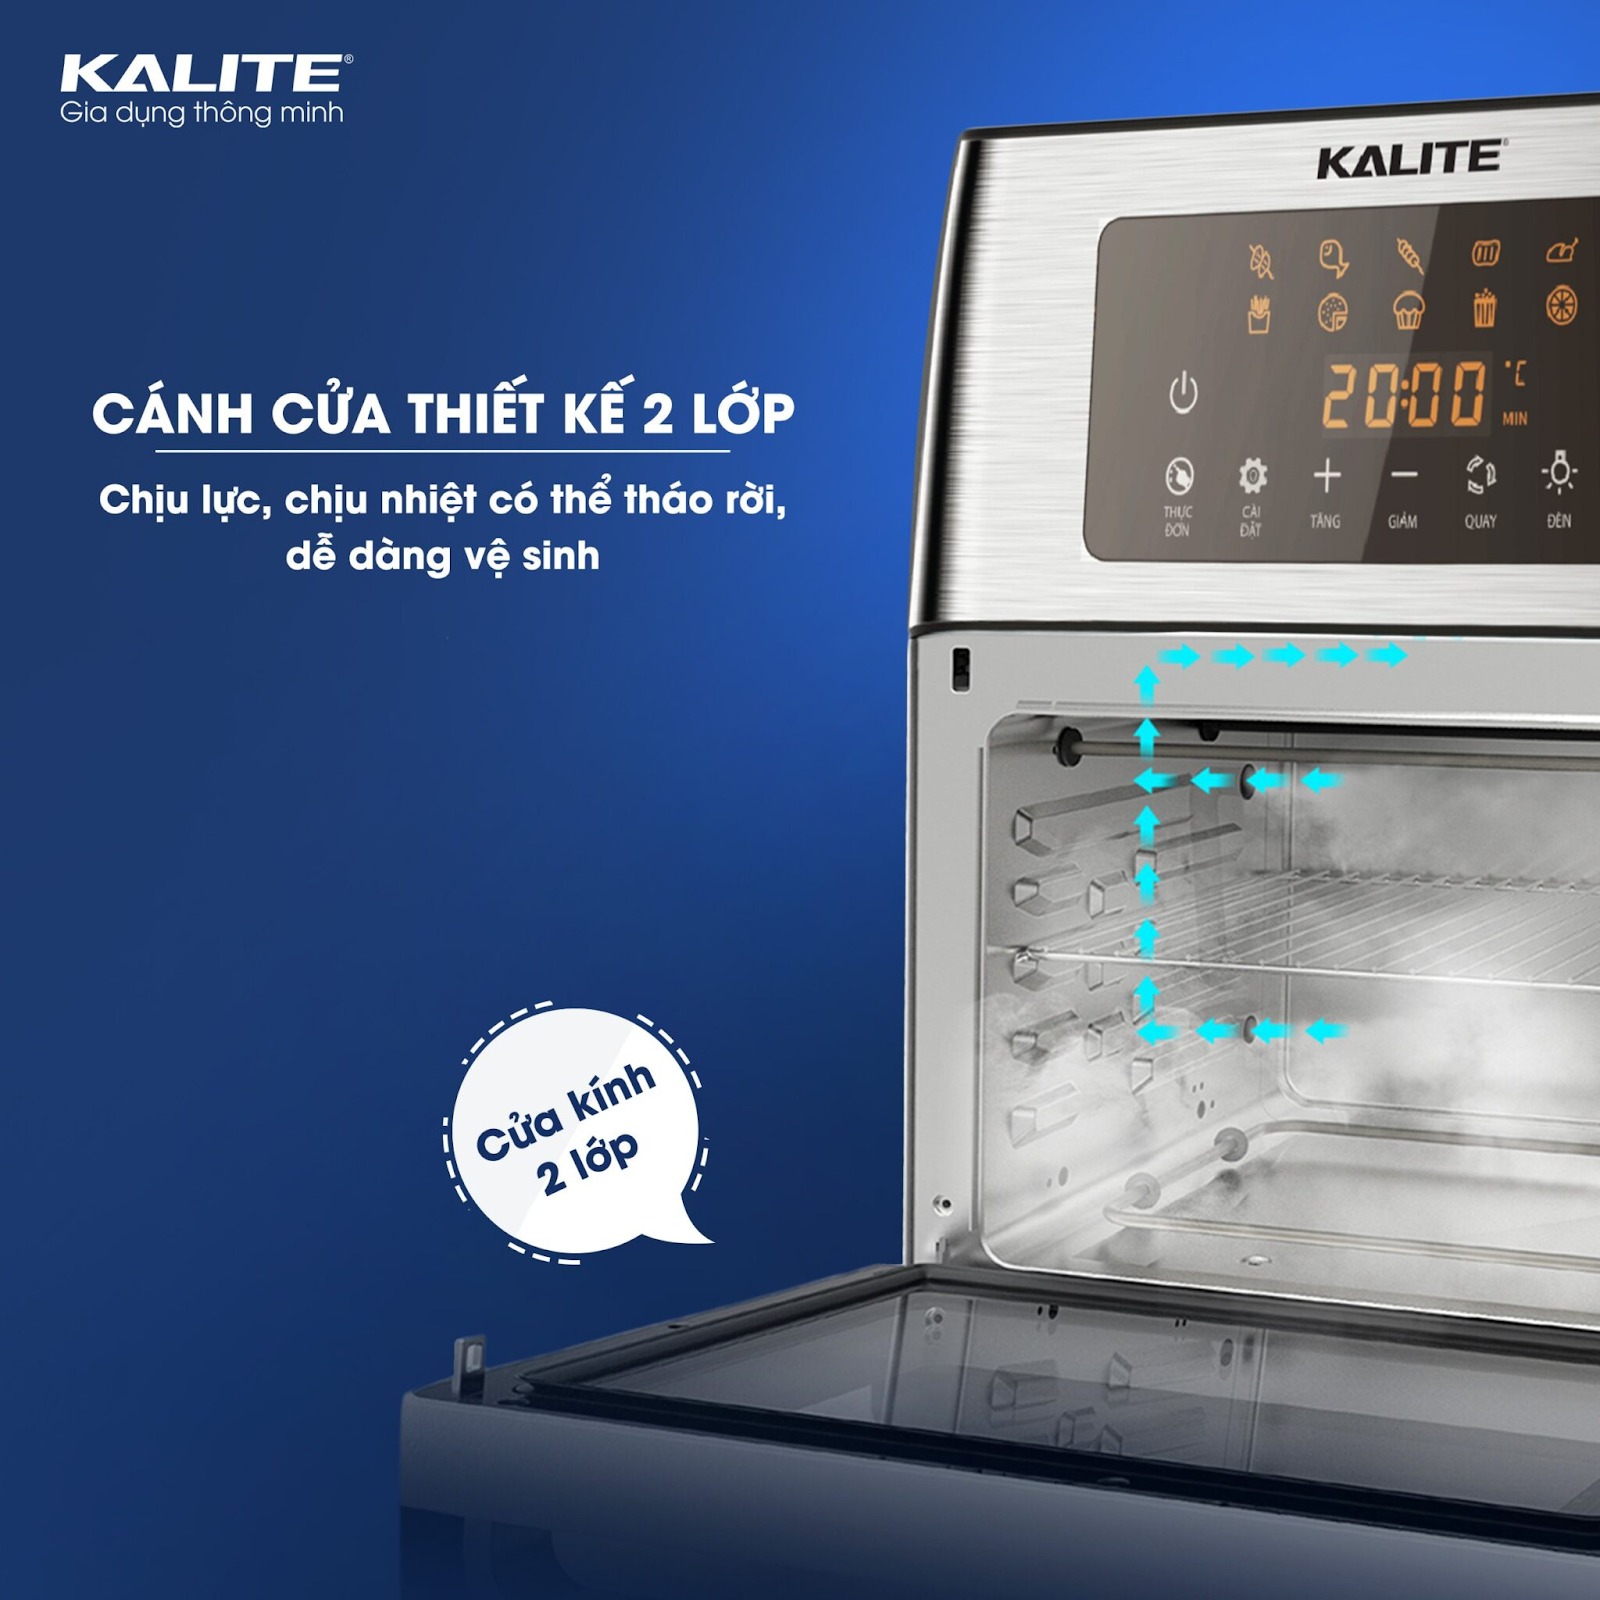 Nồi chiên không dầu Kalite KL-1500 sở hữu cửa kính 2 lớp dễ dàng quan sát, vệ sinh